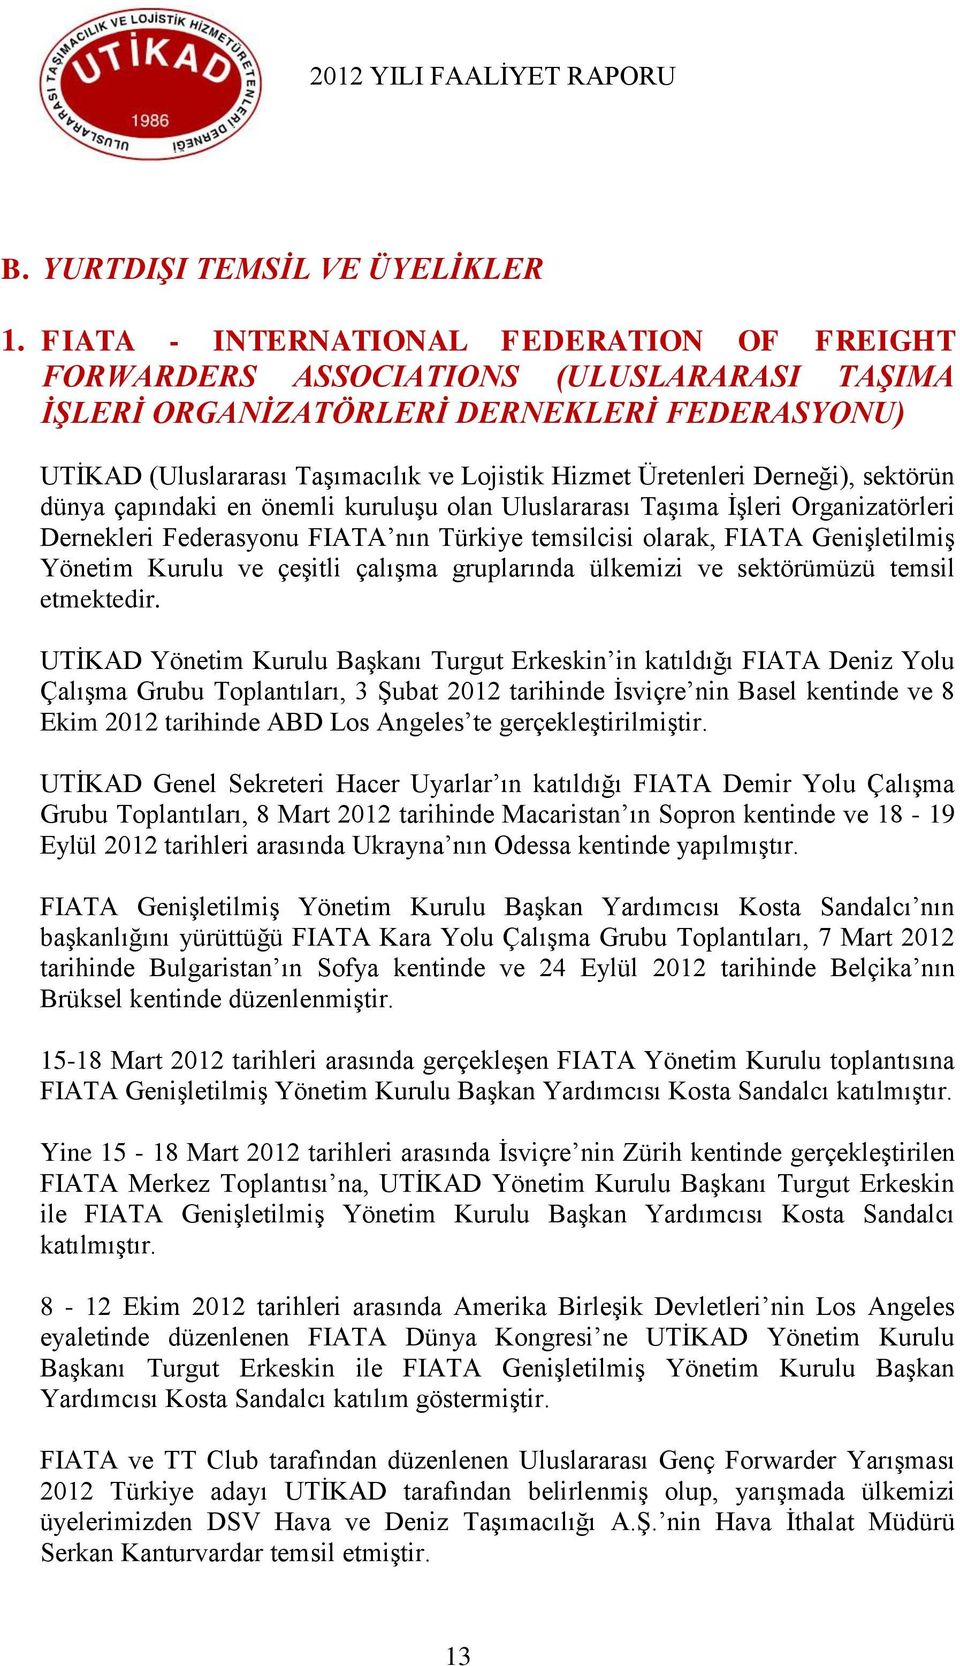 Derneği), sektörün dünya çapındaki en önemli kuruluģu olan Uluslararası TaĢıma ĠĢleri Organizatörleri Dernekleri Federasyonu FIATA nın Türkiye temsilcisi olarak, FIATA GeniĢletilmiĢ Yönetim Kurulu ve